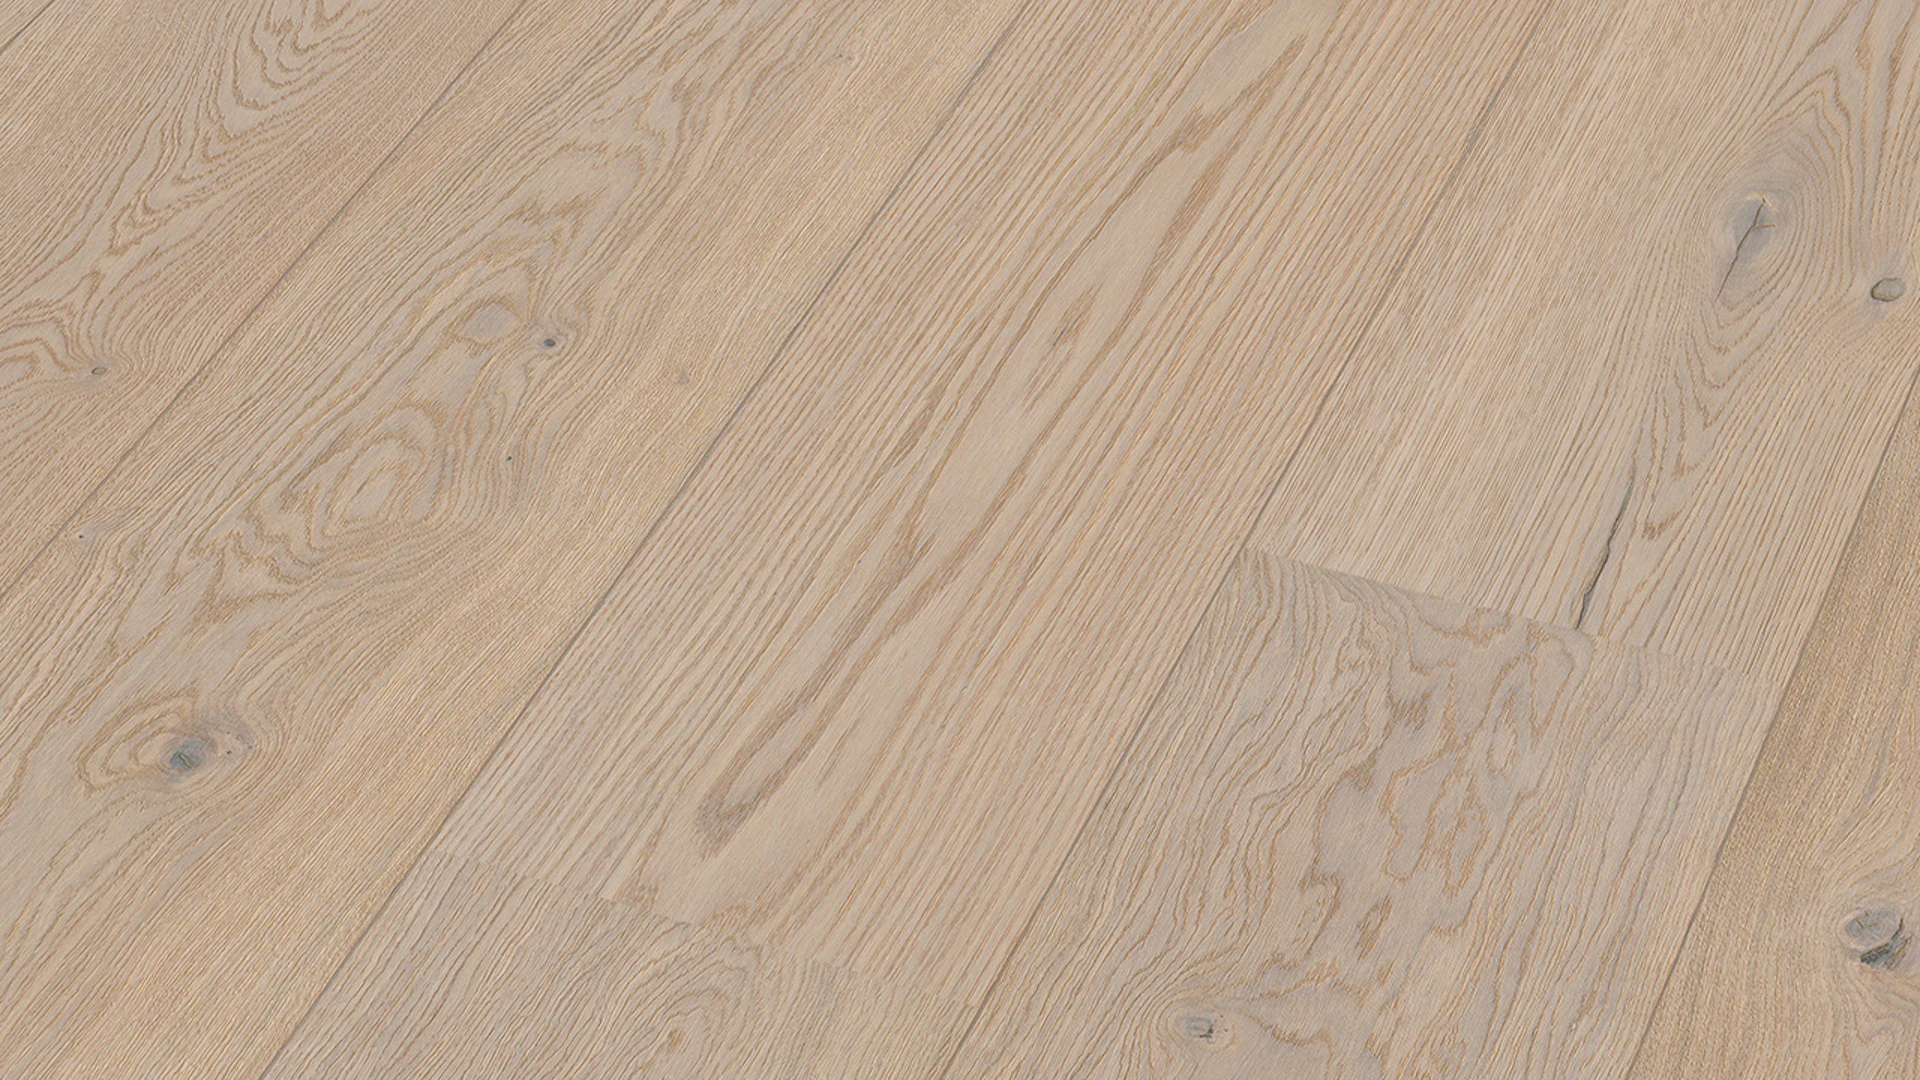 MEISTER Parquet Flooring - Lindura HD 400 Oak lively cream white (500011-2200270-08908)